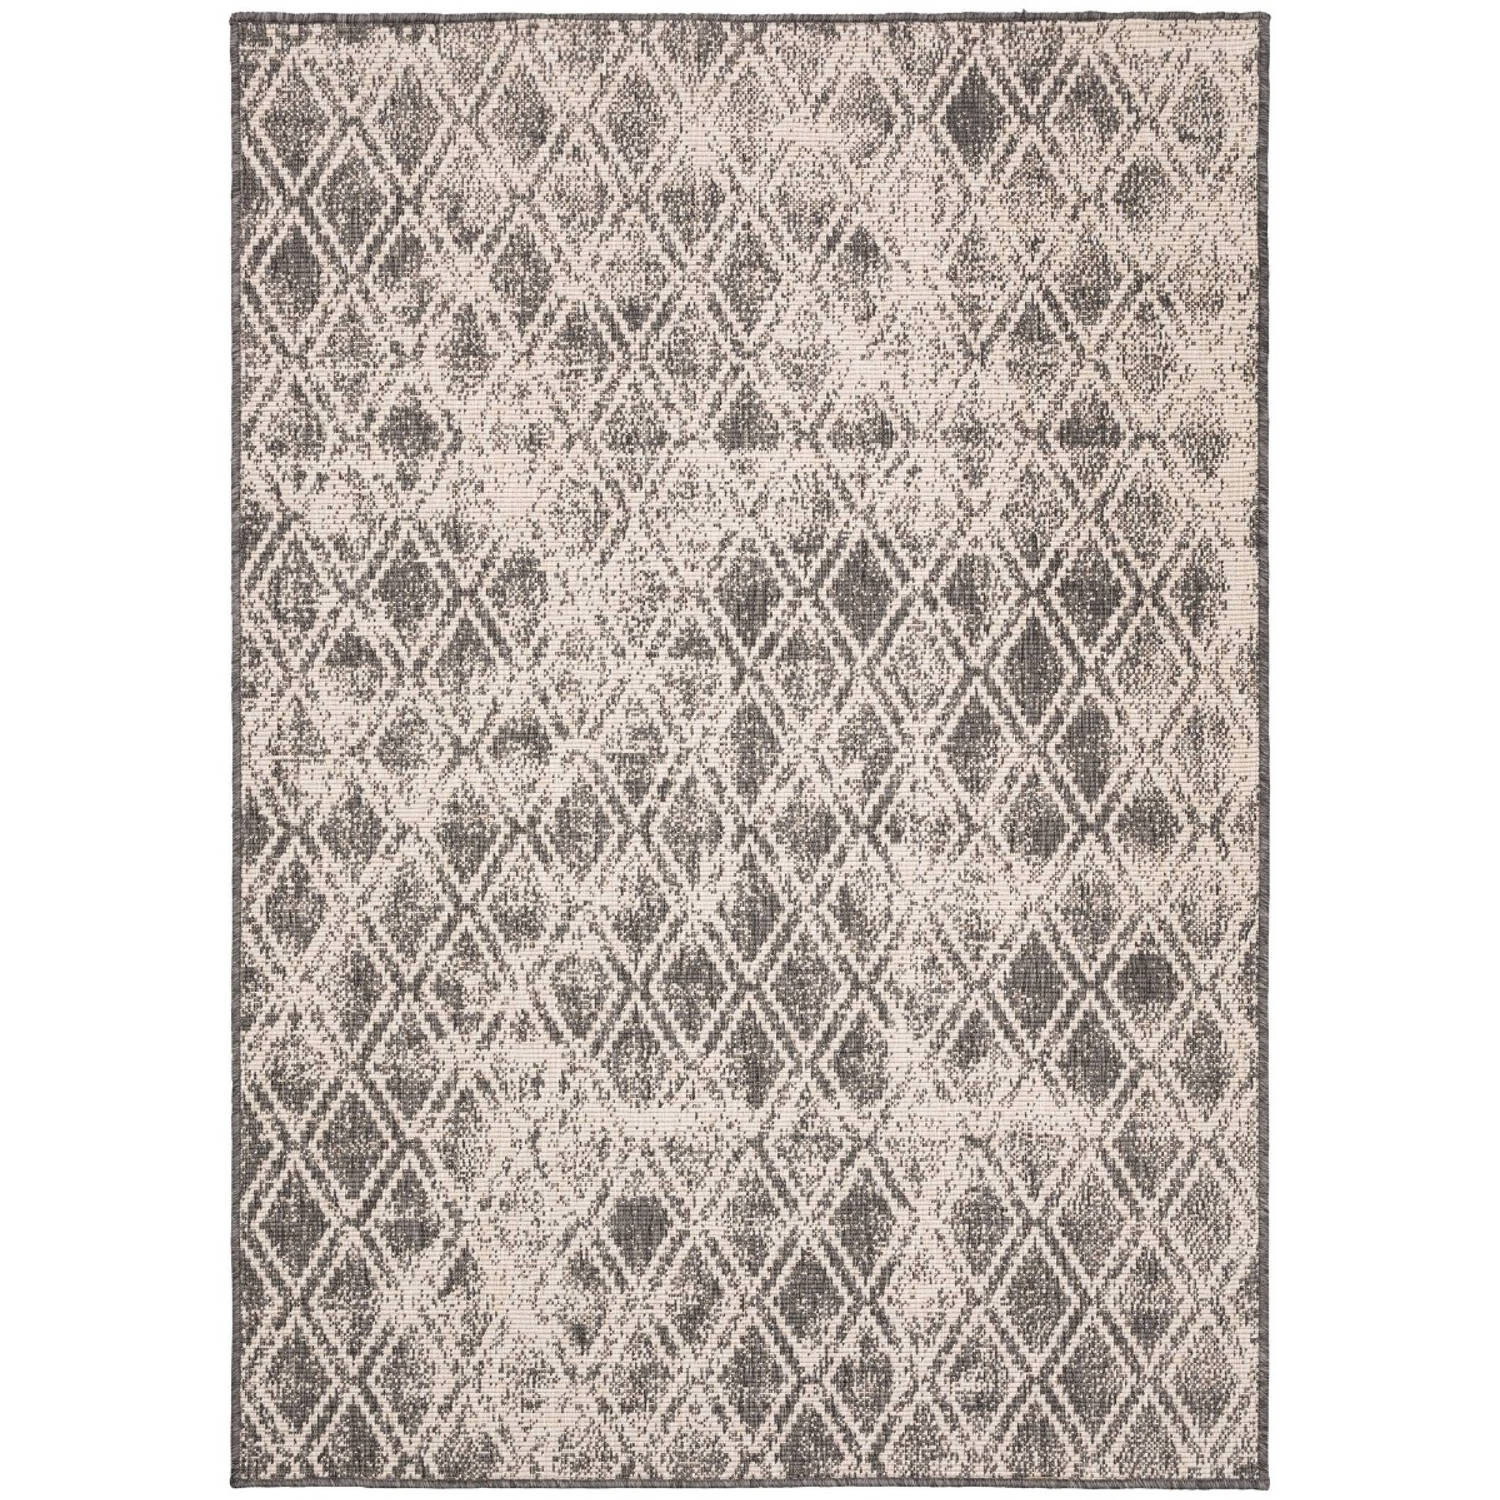 Buiten vloerkleed Frost - Grijs/Wit - dubbelzijdig - EVA Interior - 160 x 230 cm (M)